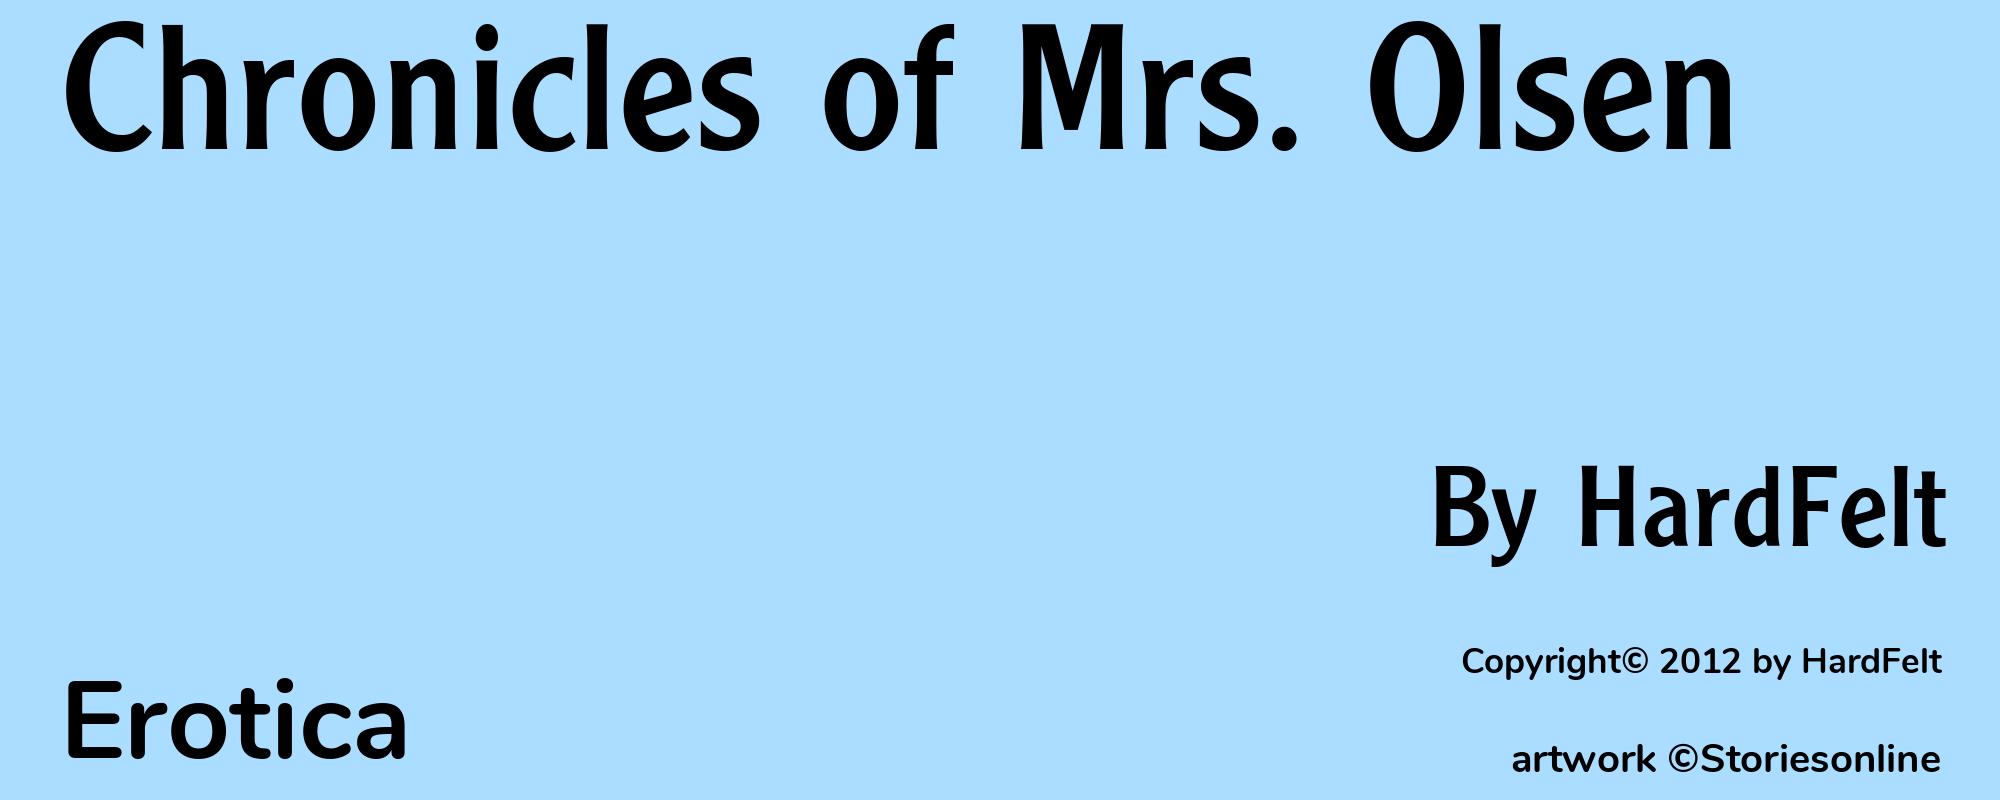 Chronicles of Mrs. Olsen - Cover